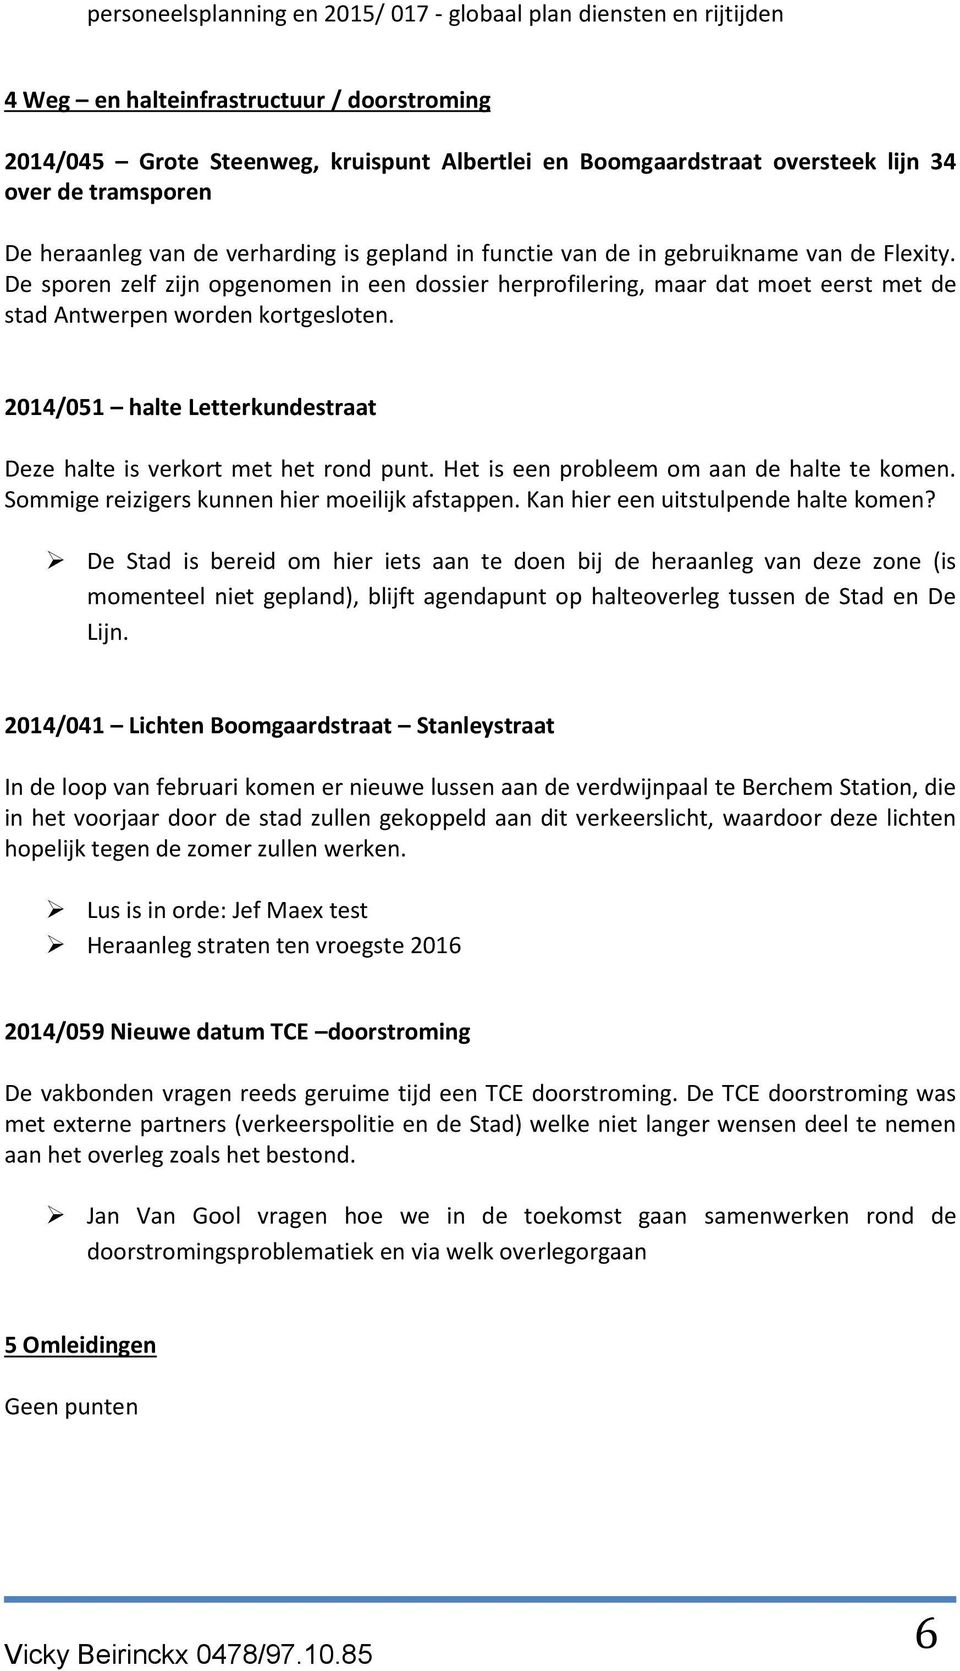 De sporen zelf zijn opgenomen in een dossier herprofilering, maar dat moet eerst met de stad Antwerpen worden kortgesloten. 2014/051 halte Letterkundestraat Deze halte is verkort met het rond punt.